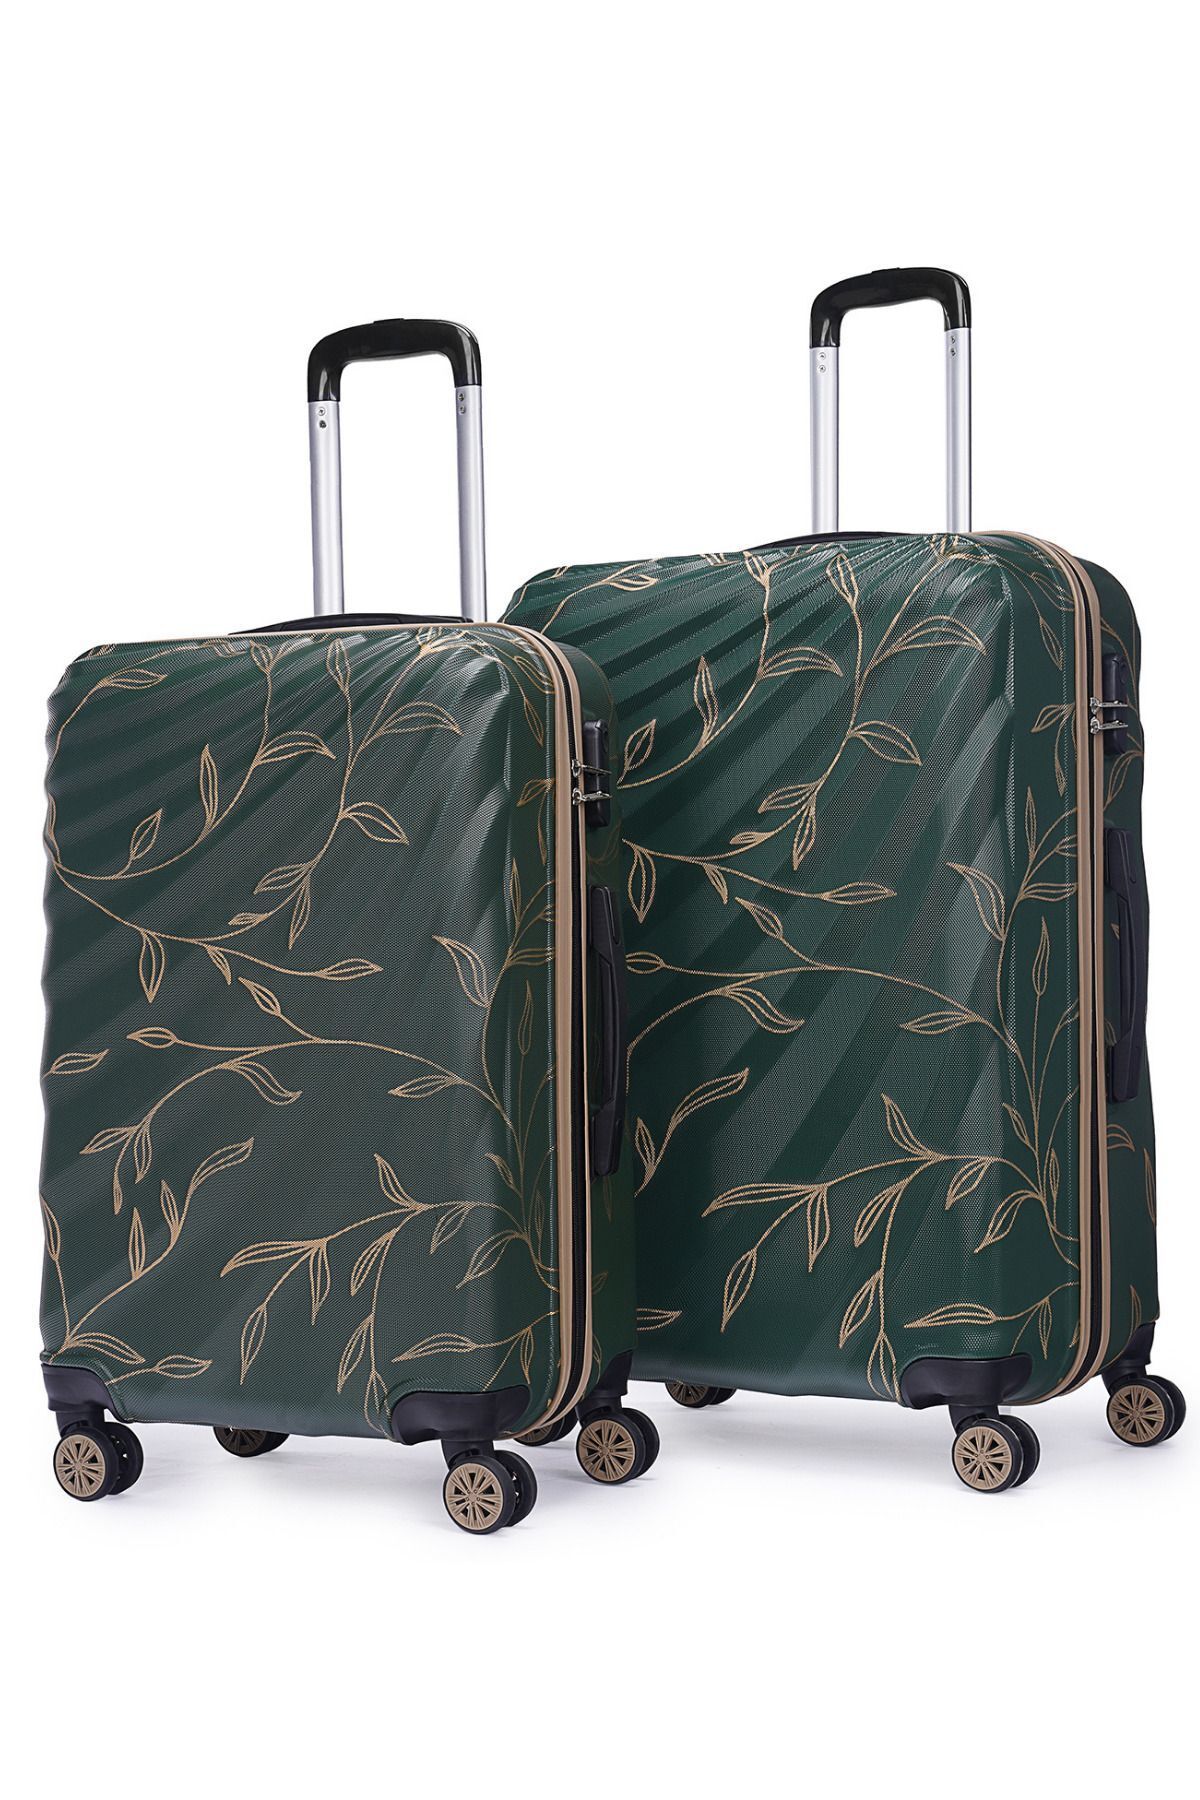 Wexta Wx-300 Yaprak Baskılı Yağ Yeşili Büyük & Orta Boy 2'li Set Valiz / Seyahat Bavulu